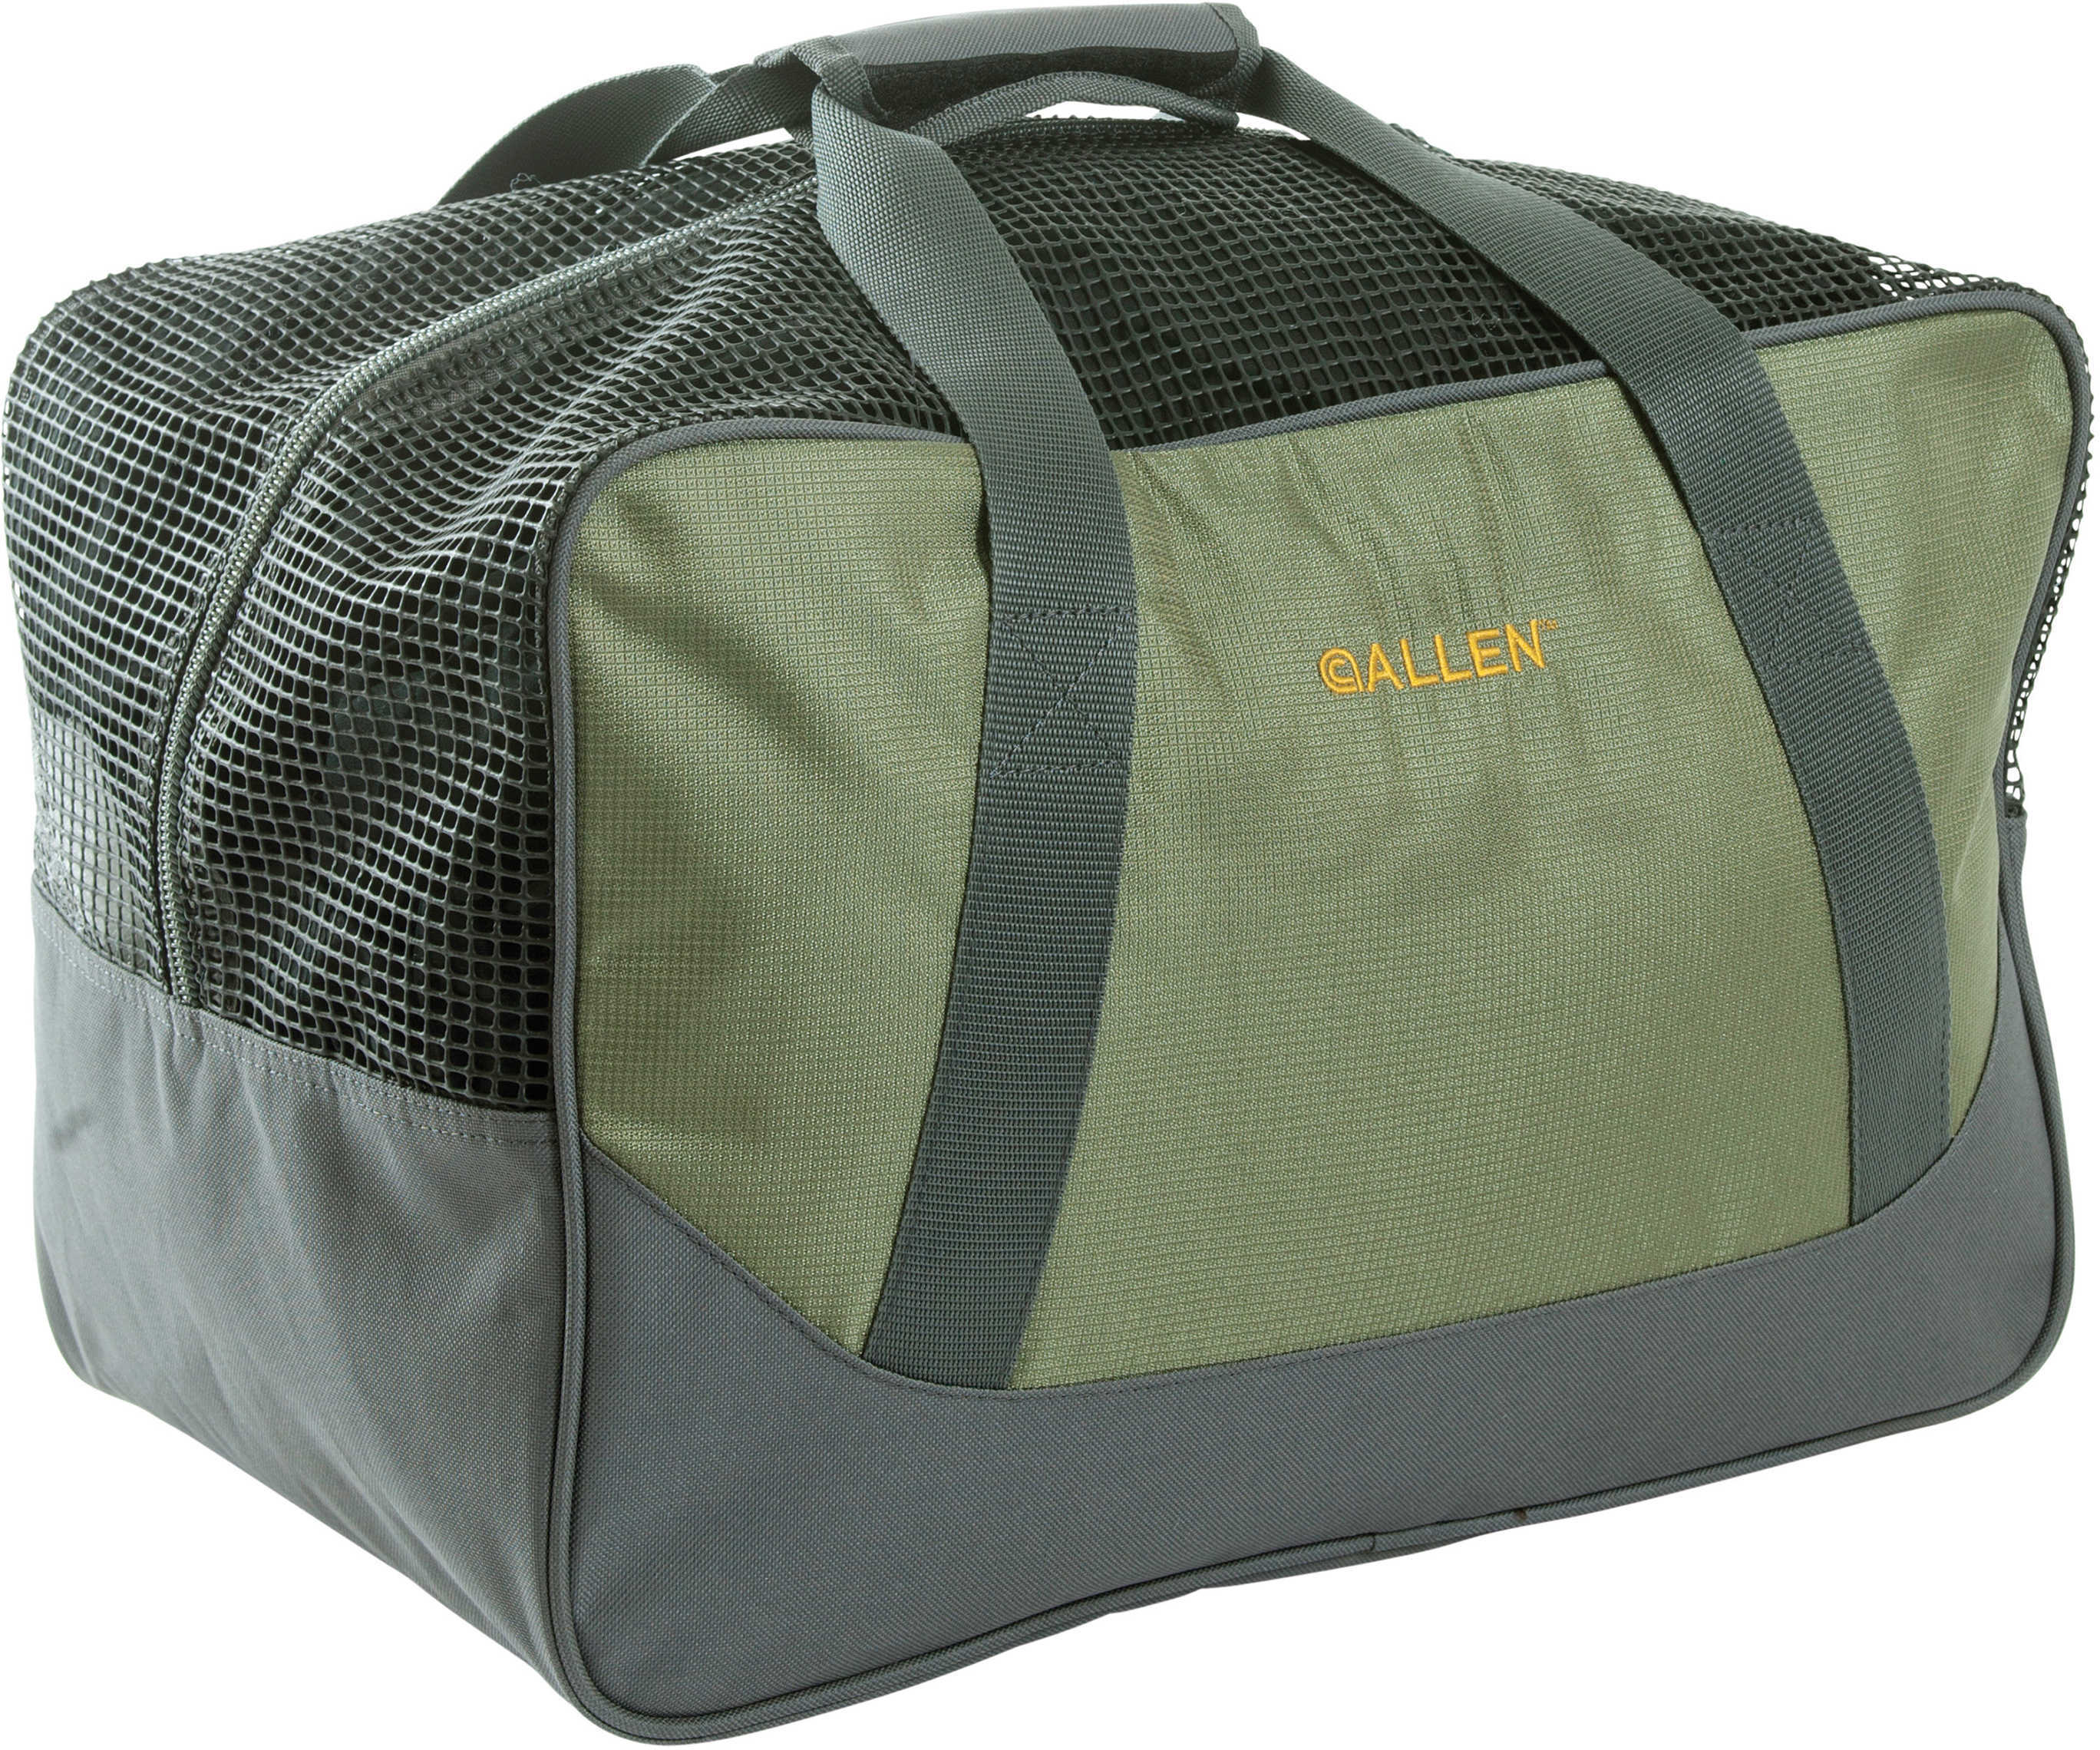 Allen Cases Spruce Creek Wader Bag, Olive Md: 6364